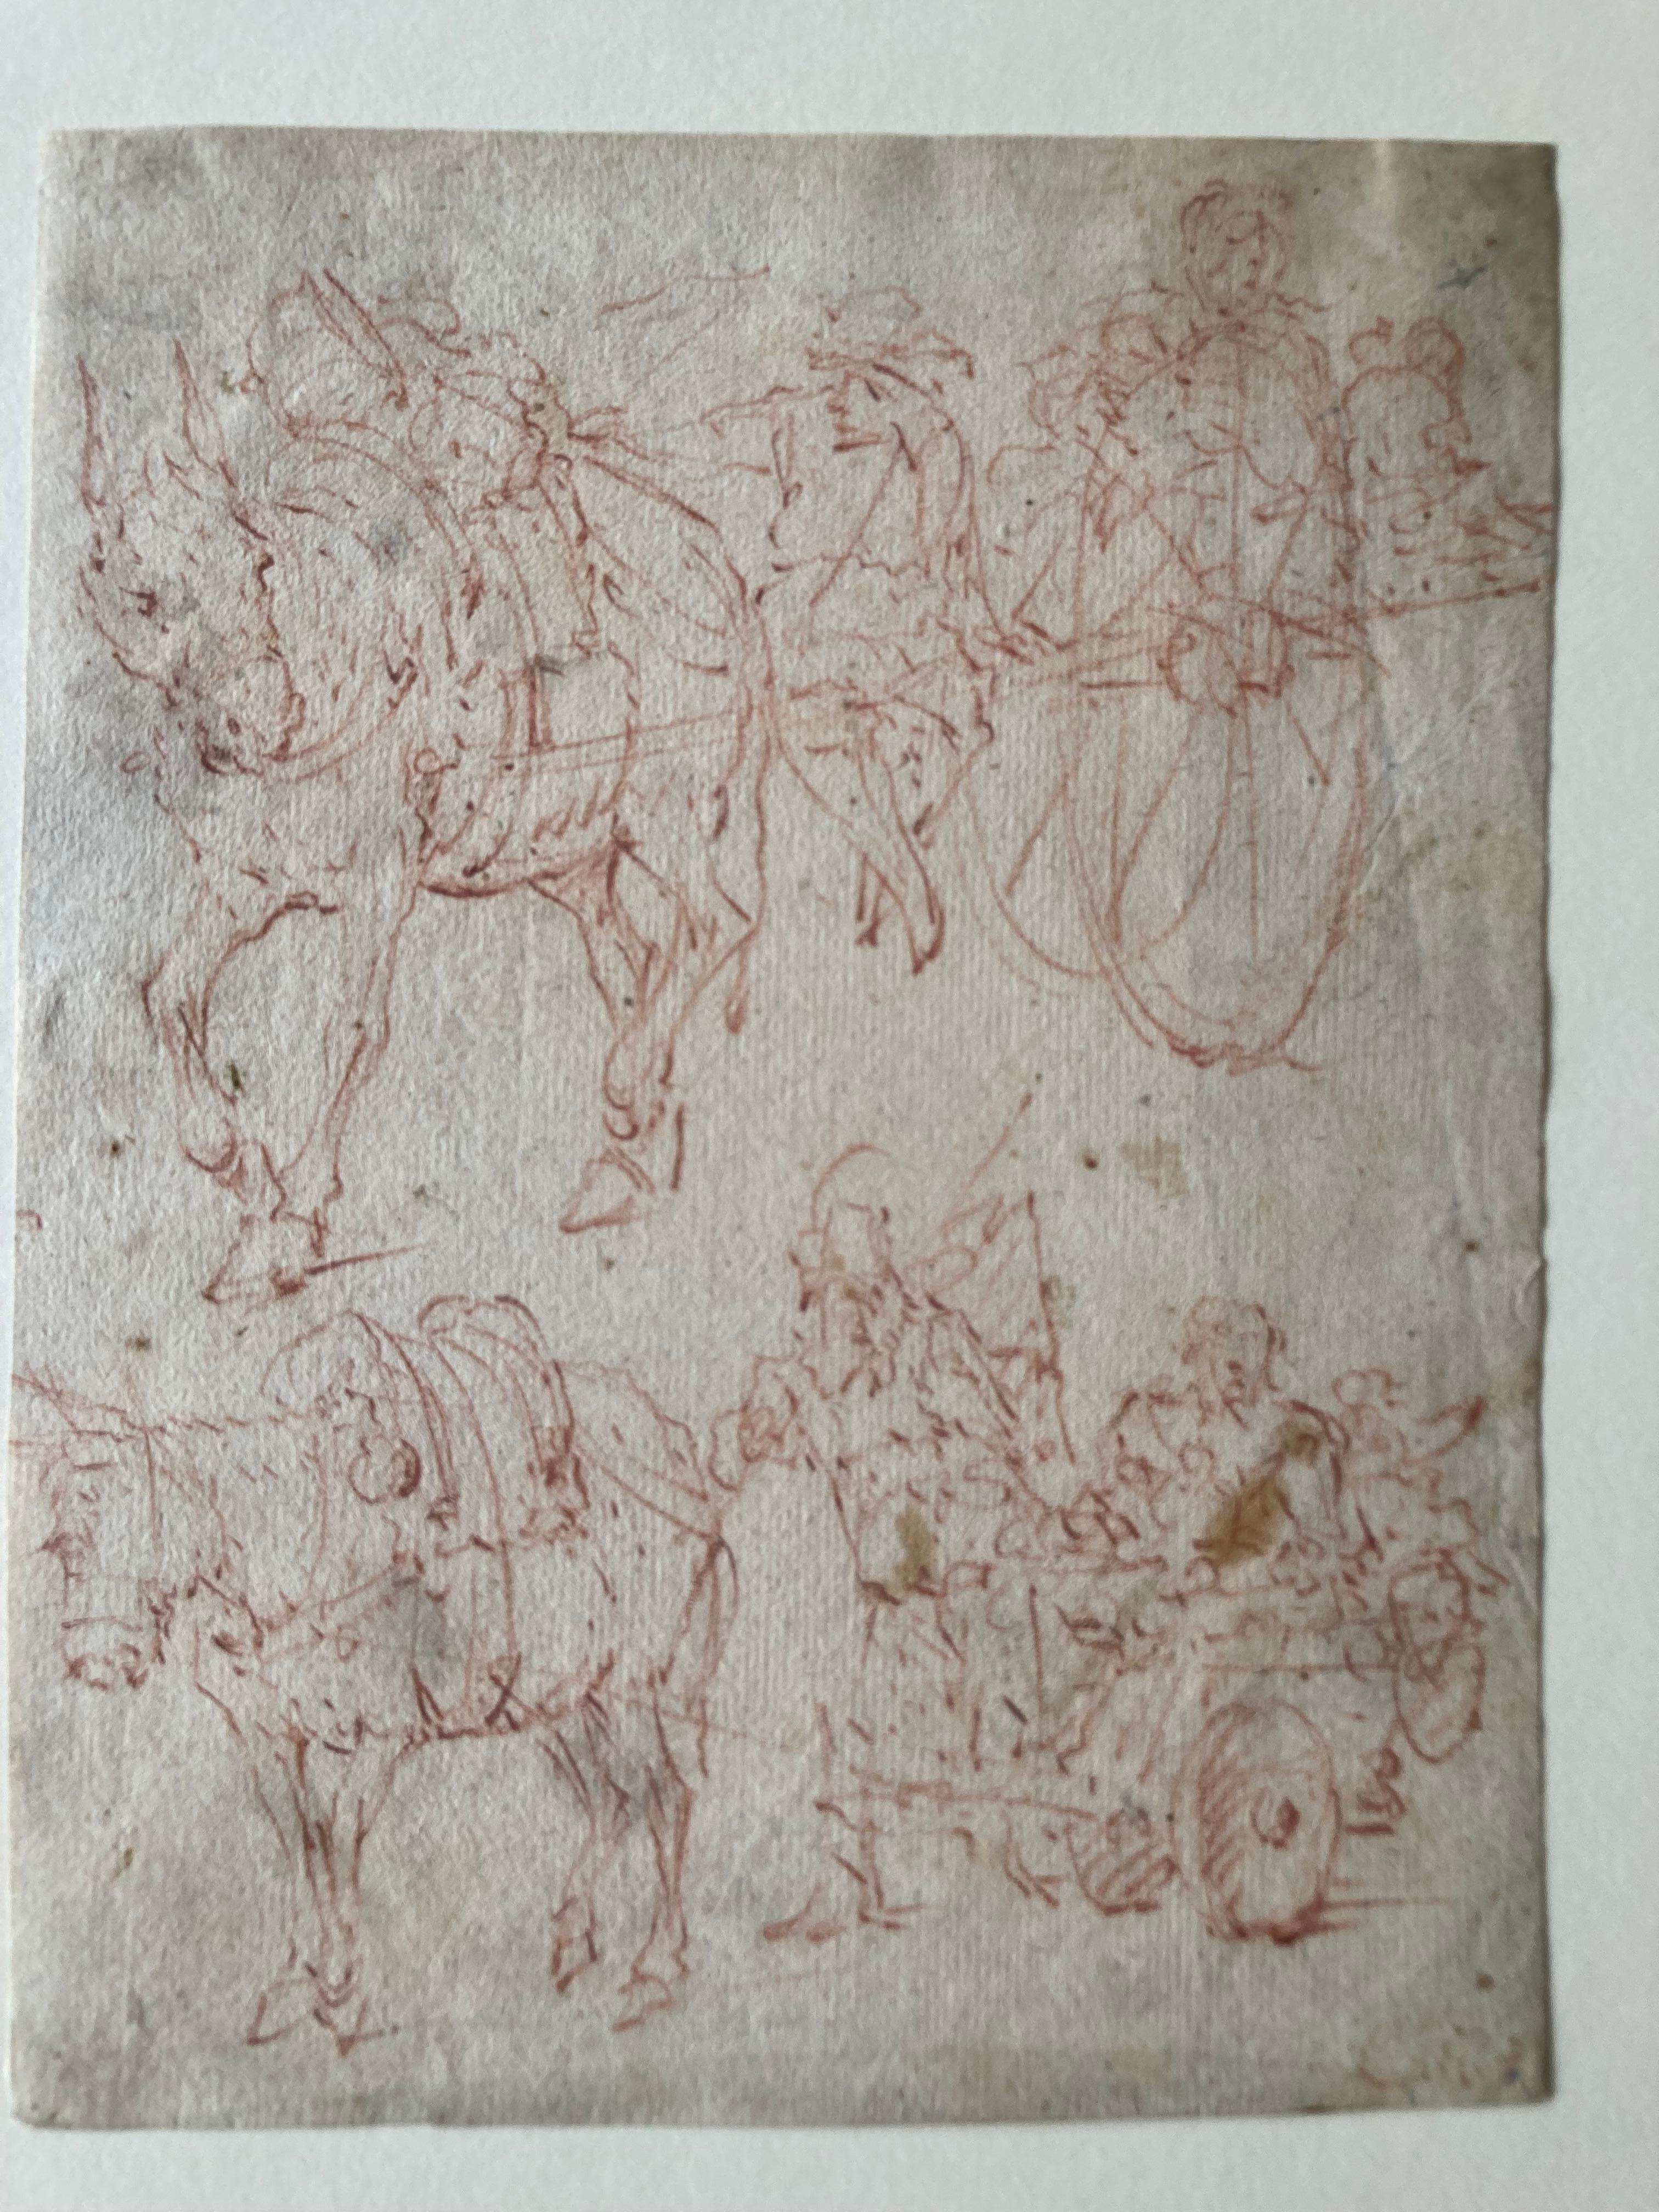 Ce dessin montre plusieurs études d'un âne avec une voiture. Son style est proche des artistes flamands du XVIIe siècle. Sur le passepartout, on peut lire 